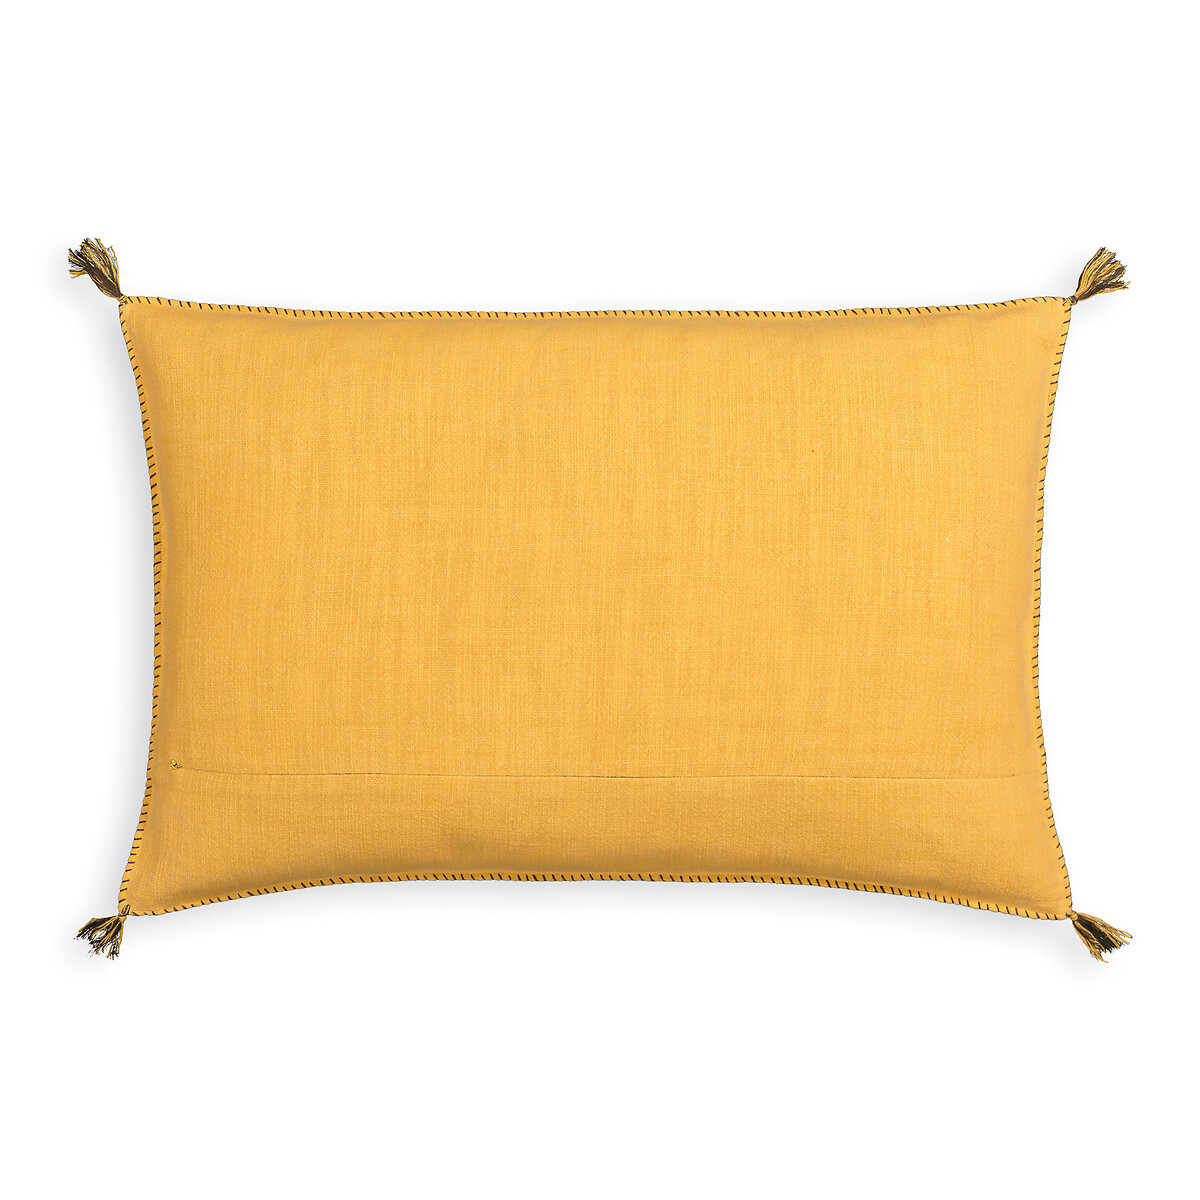 Чехол На подушку из льнахлопка Chad 60 x 40 см желтый LaRedoute, размер 60 x 40 см - фото 2